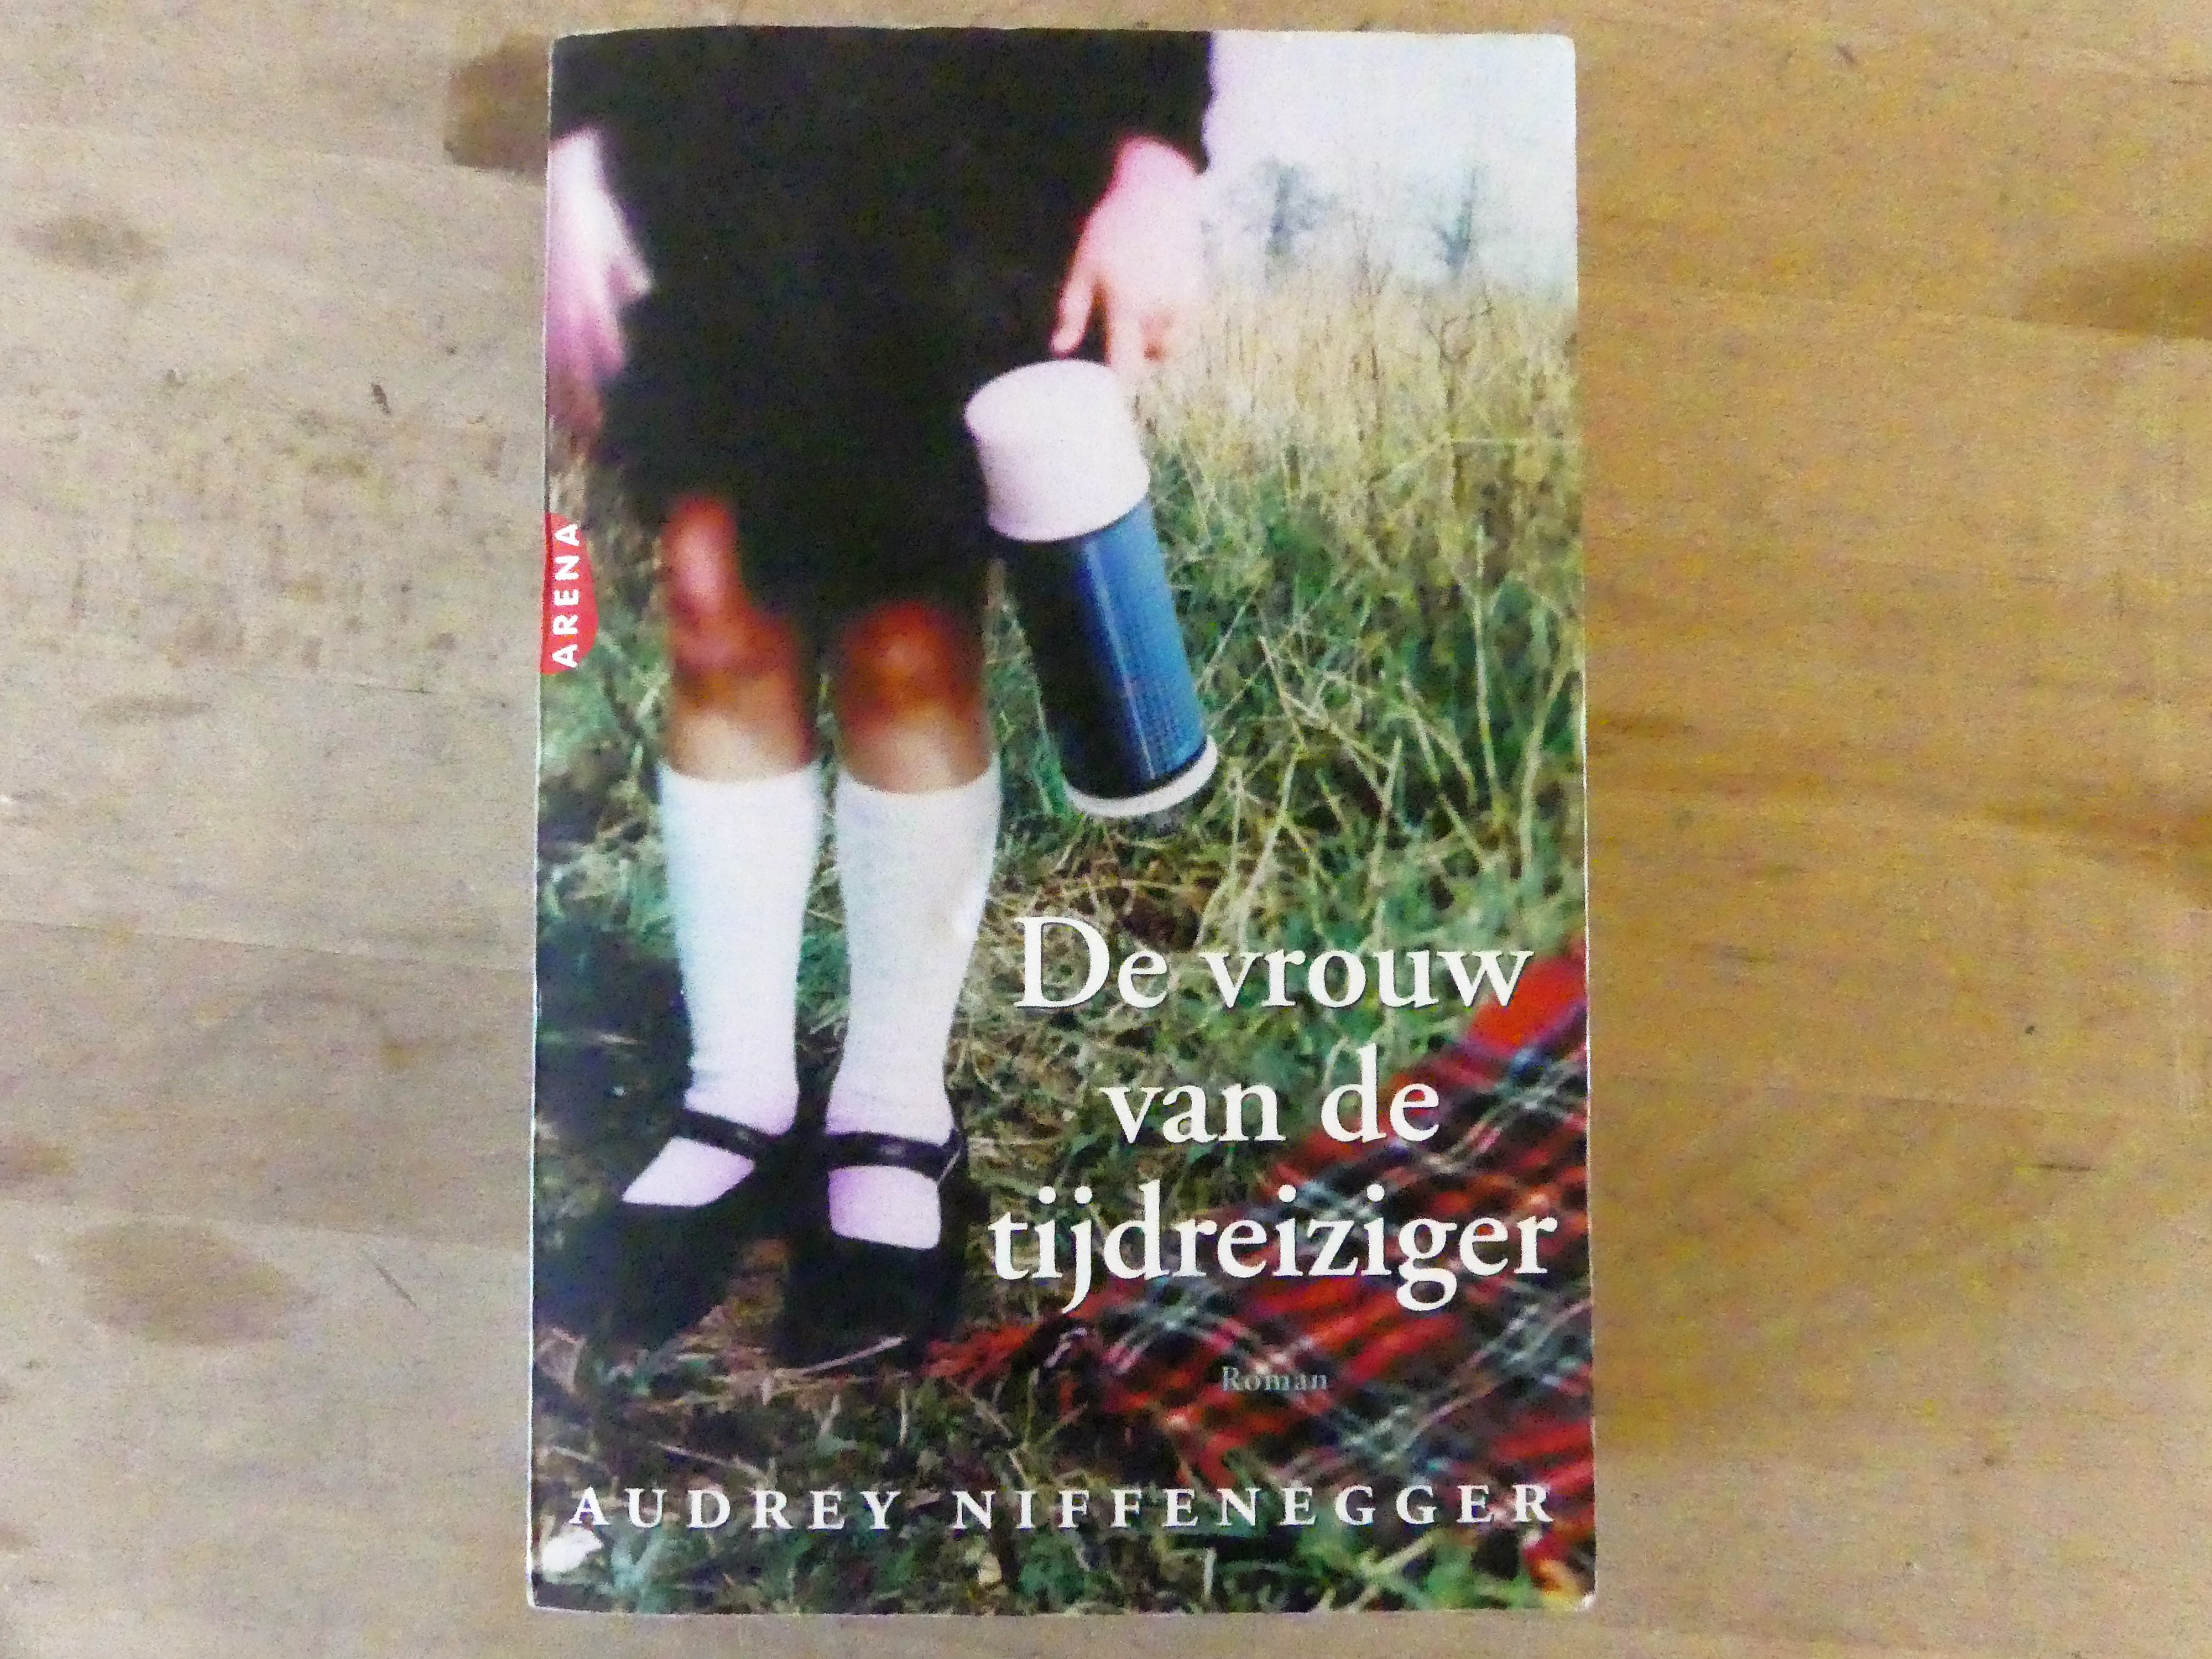 Audrey Niffenegger "De vrouw van de tijdreiziger"